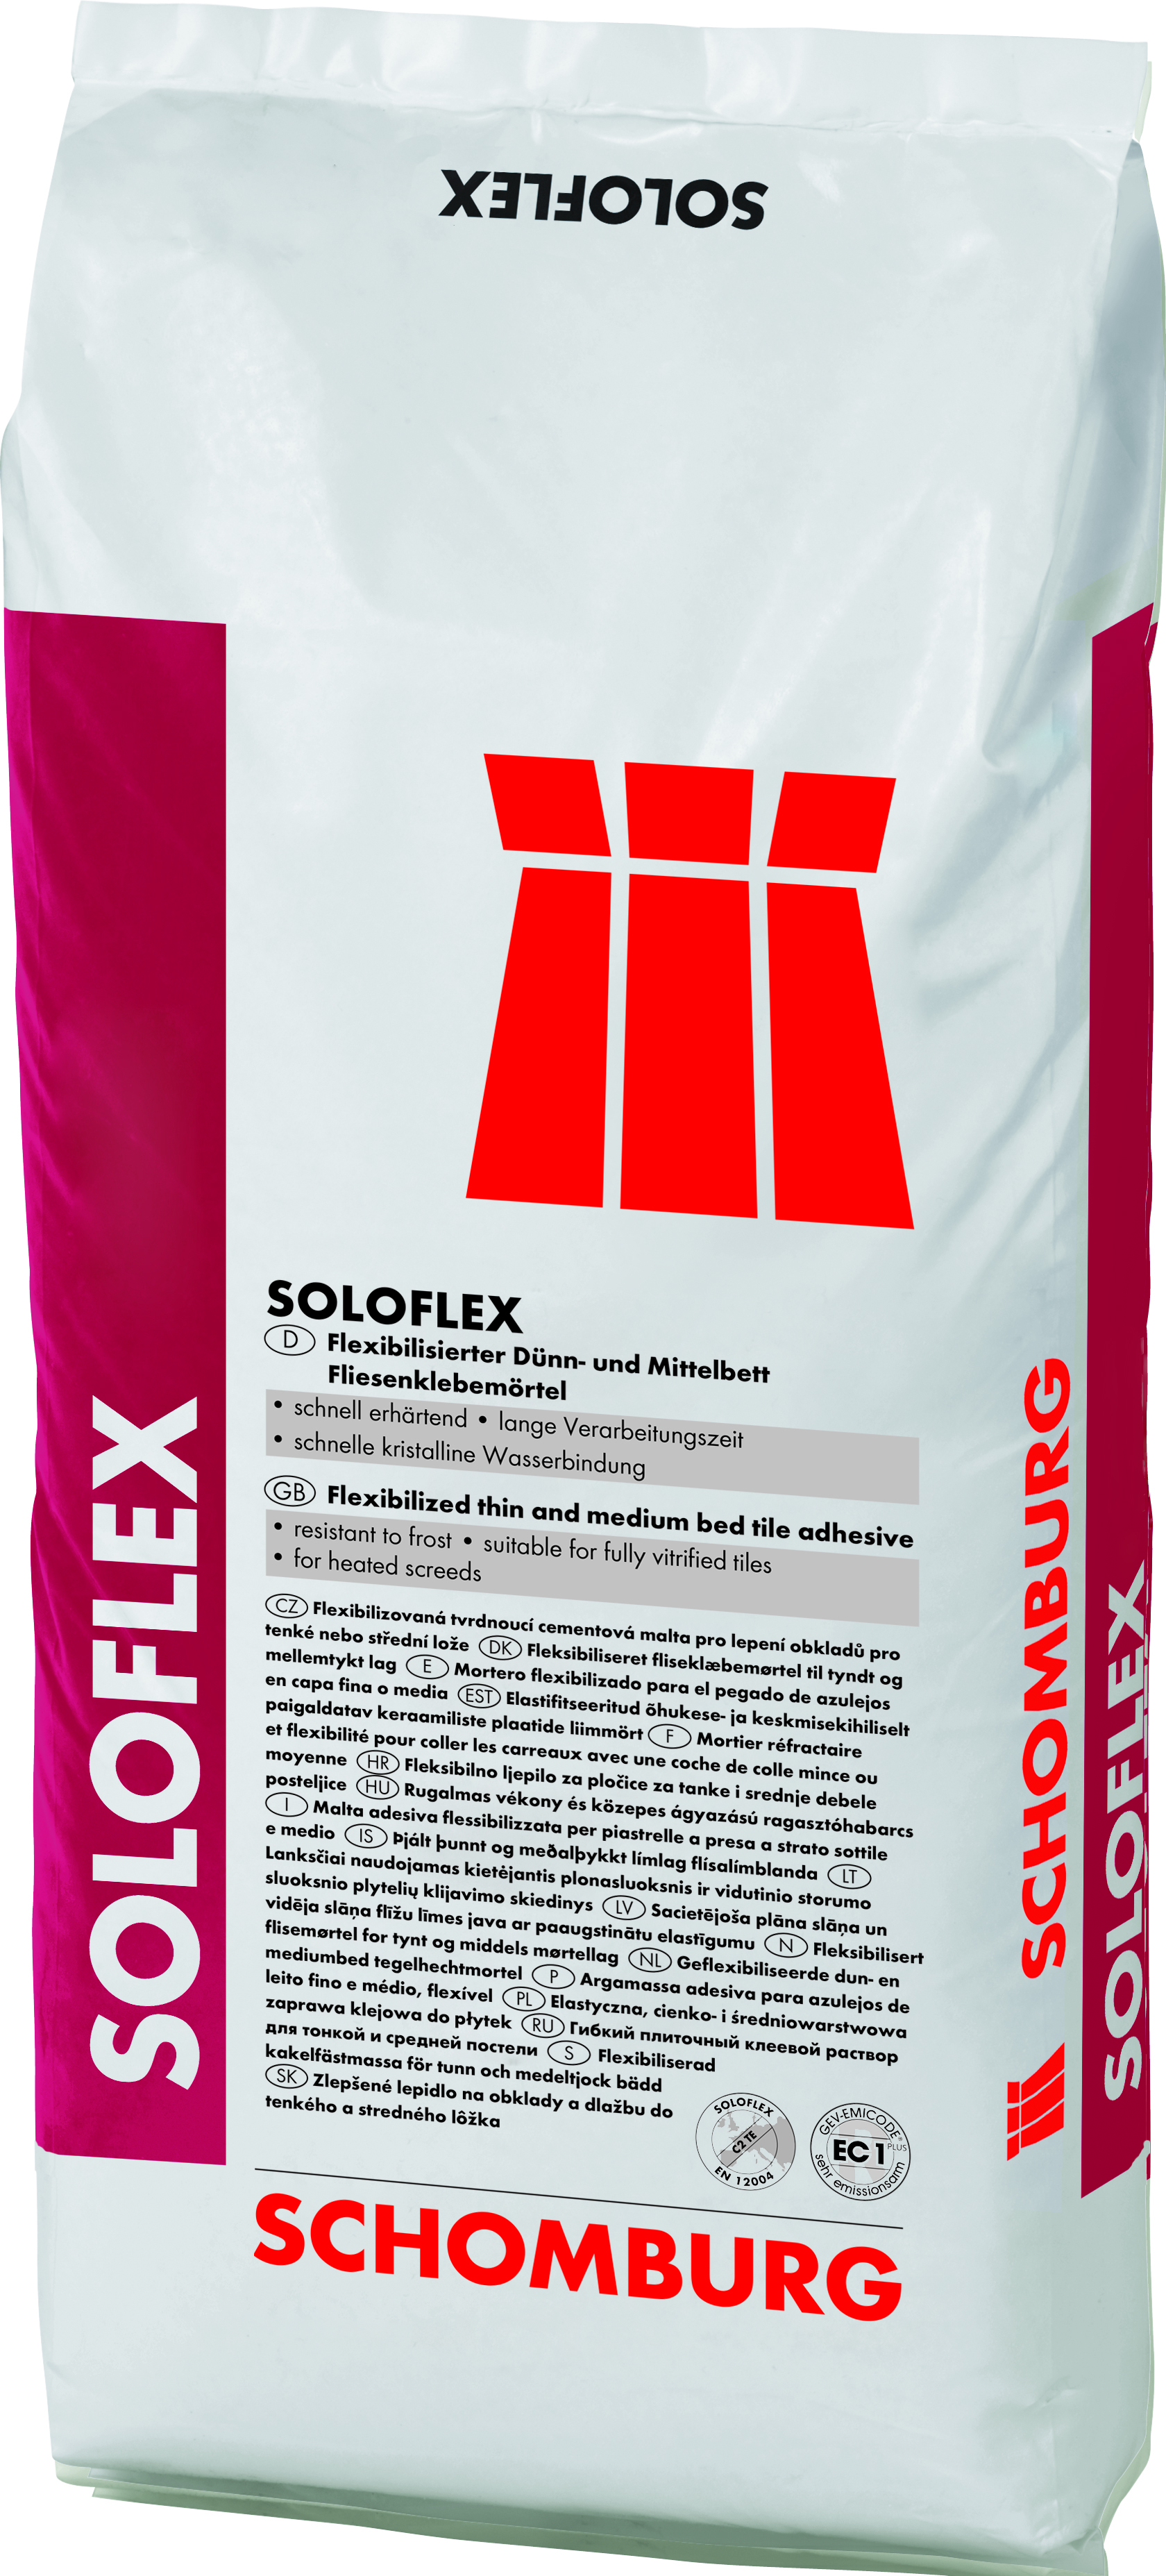 SCHOMBURG Soloflex lepidlo do tenkého a středního lože 25kg [205430001]